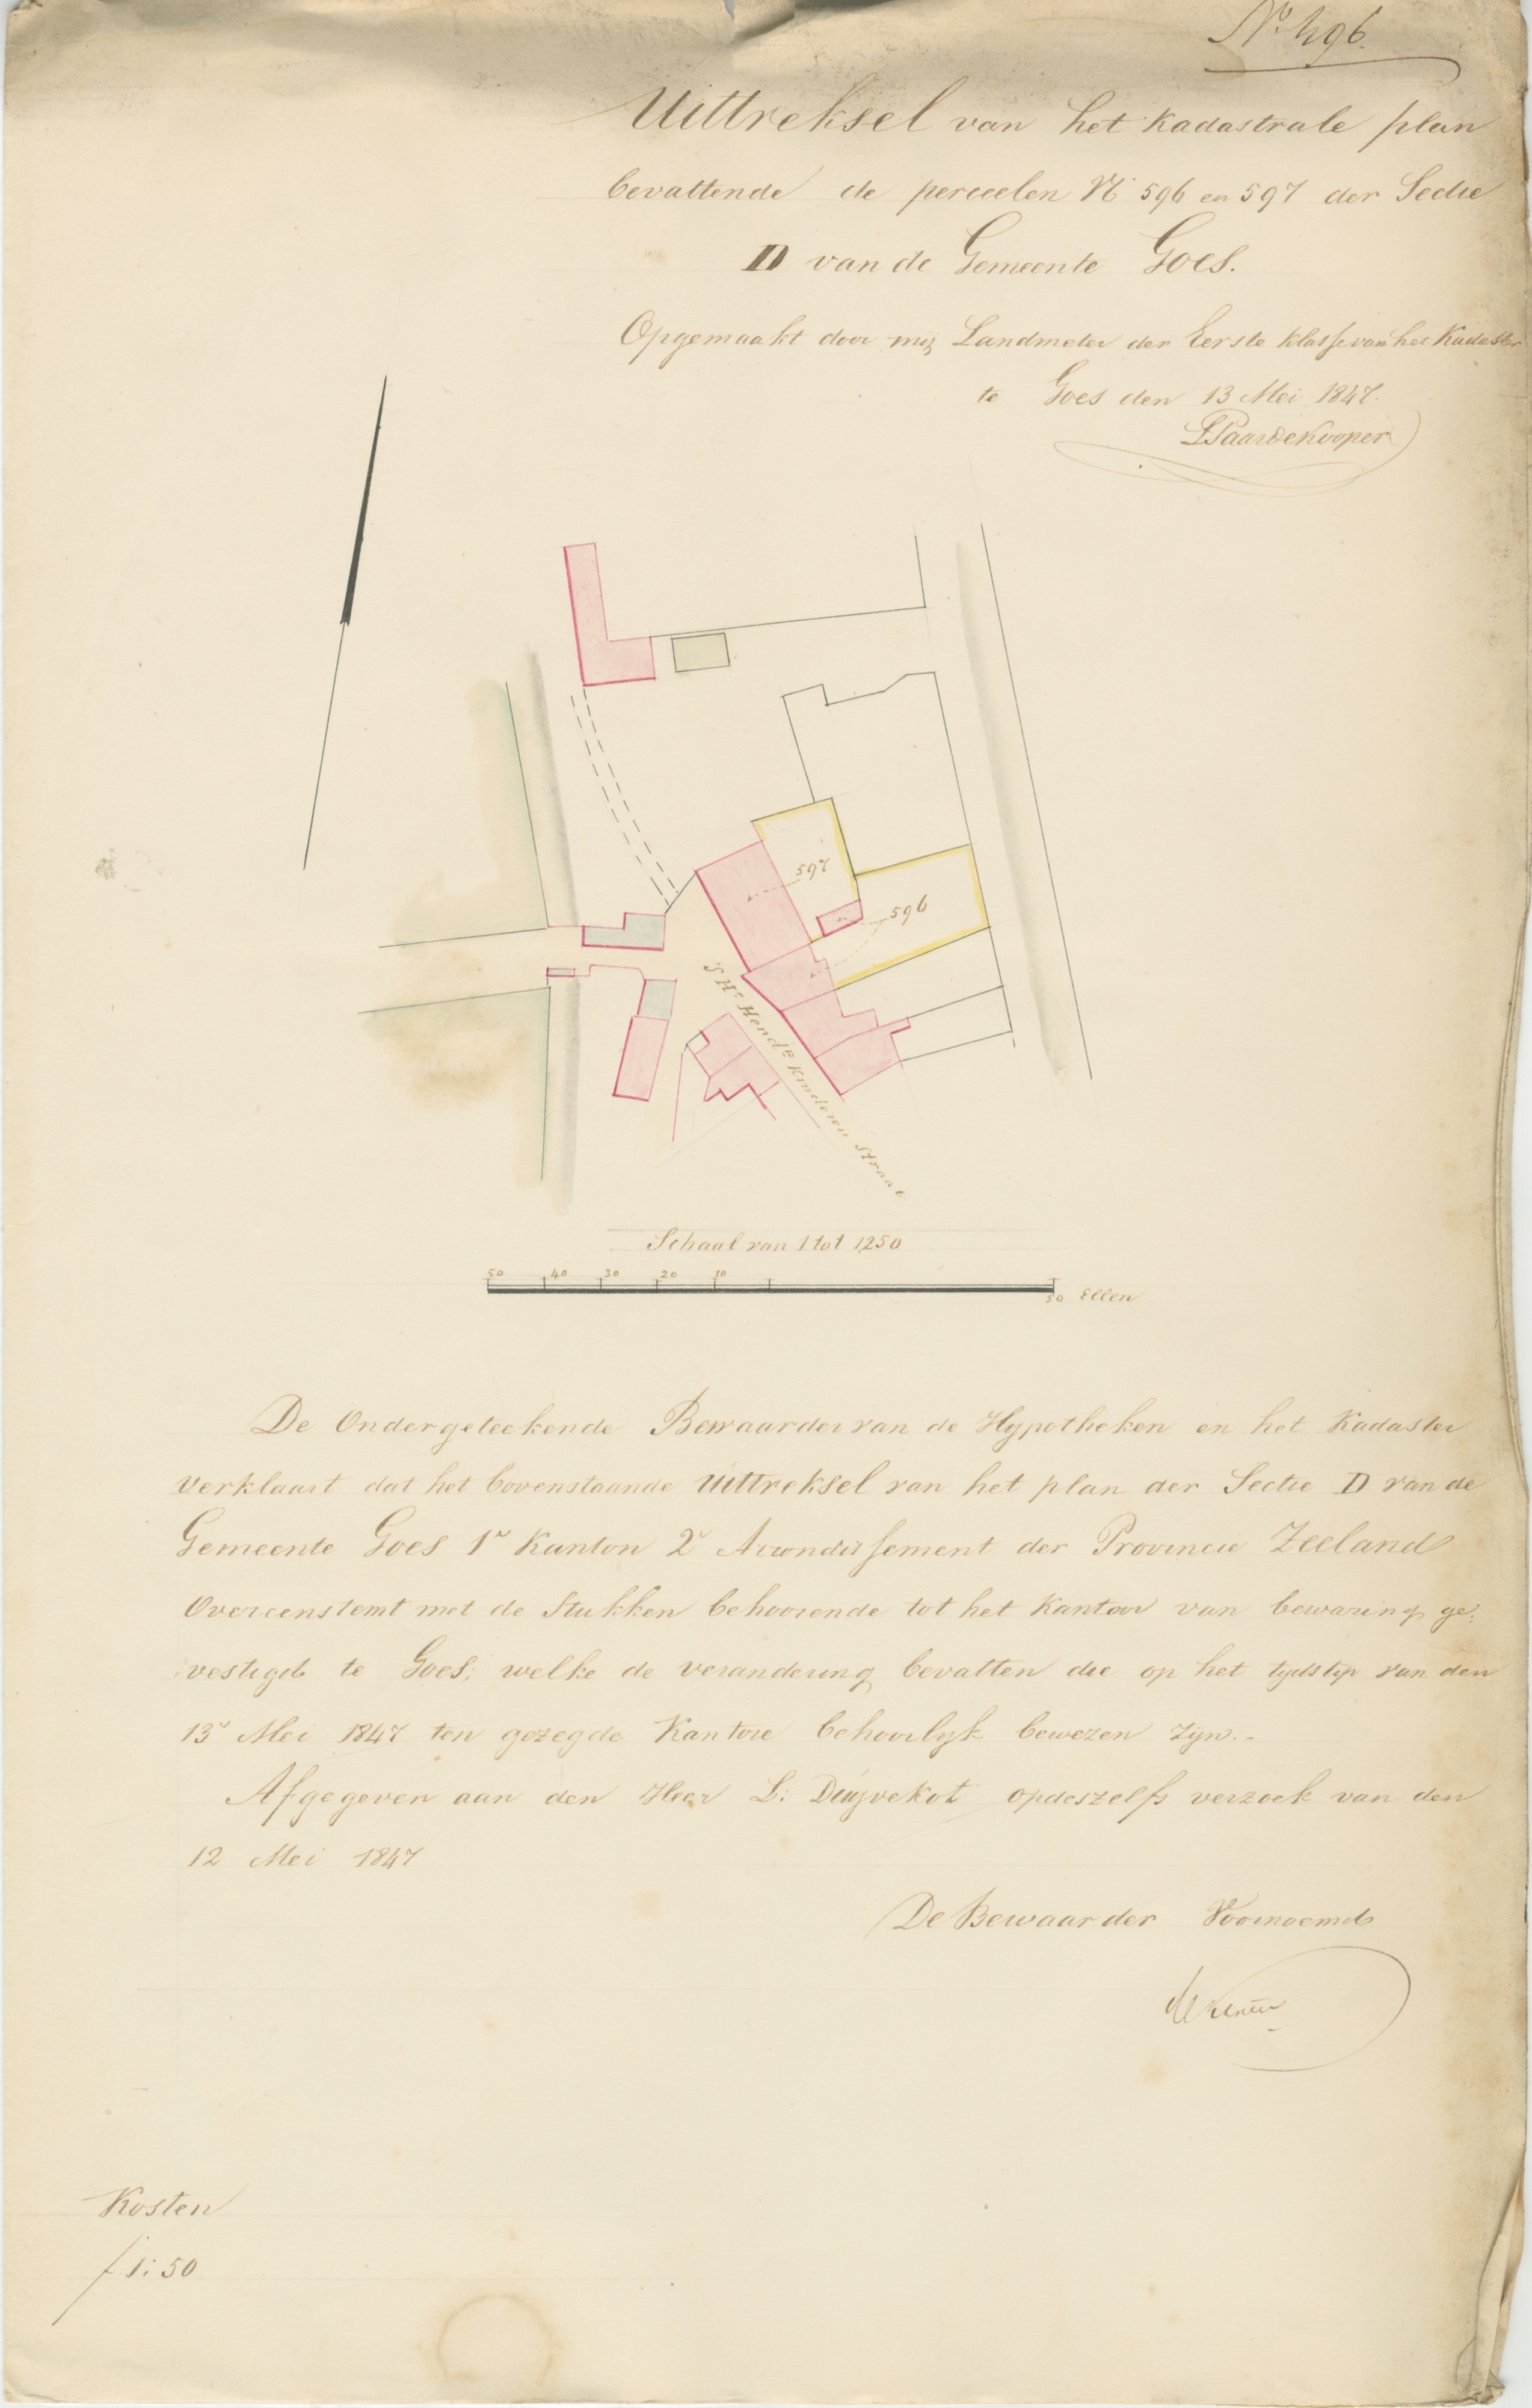 Situatieschets voor de bouw van een bakoven door Duvekot in de 's-Heer Hendrikskinderenstraat, 1847. GAG.ASG.inv.nr. 598, nr. 496.